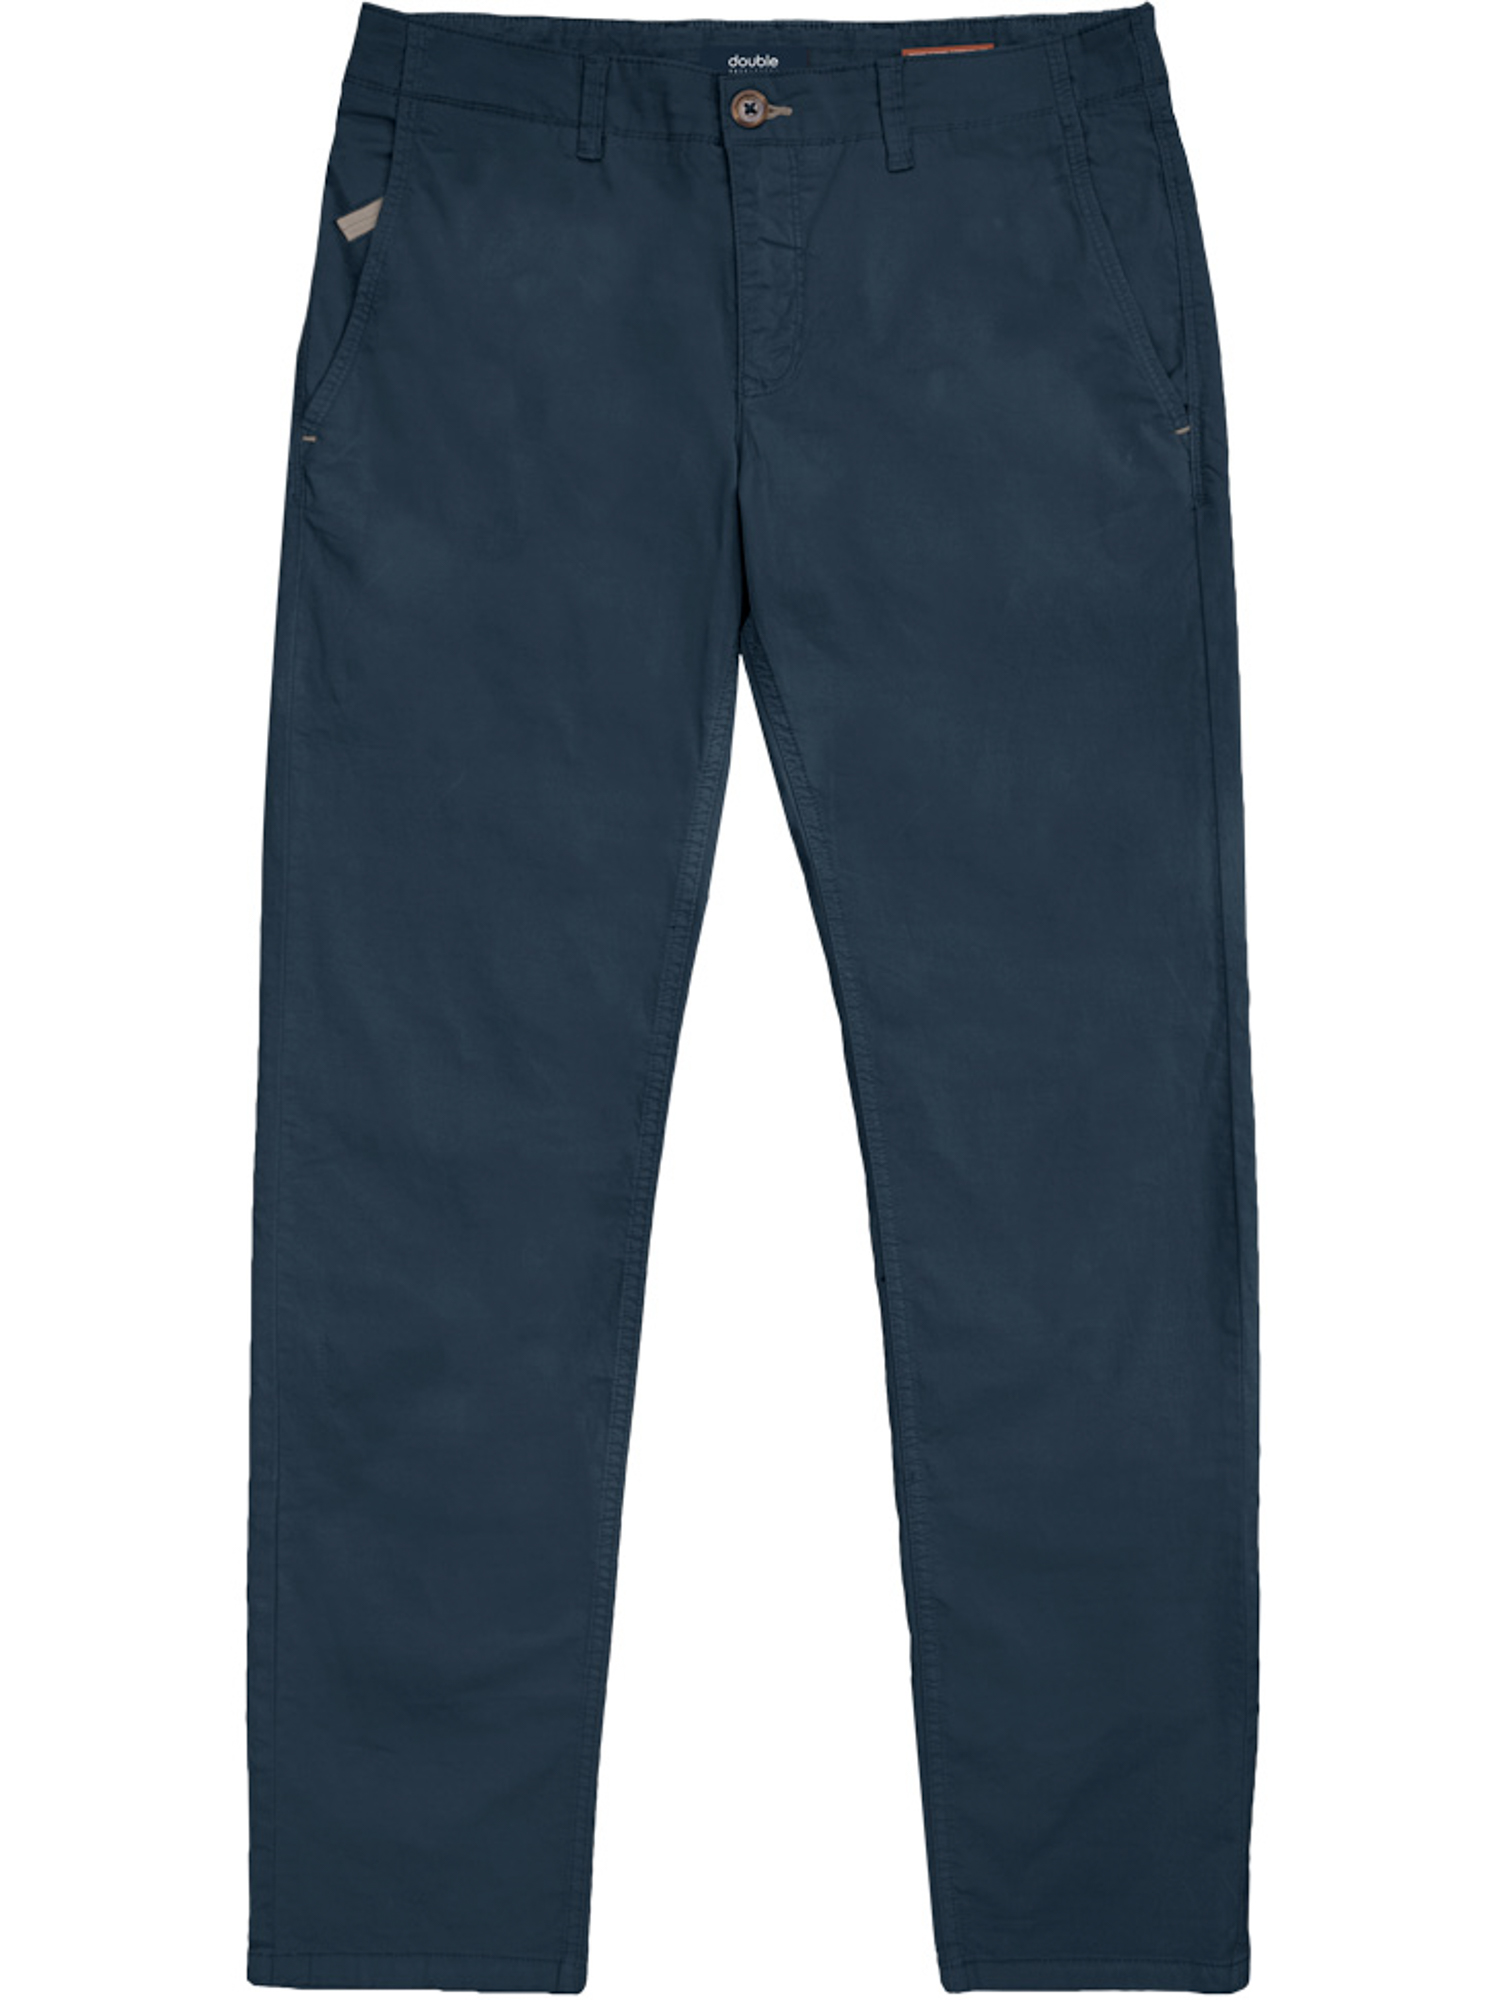 Ανδρικό Παντελόνι Casual Chinos Plus Size CP-240.A Double - Σκ. Μπλε